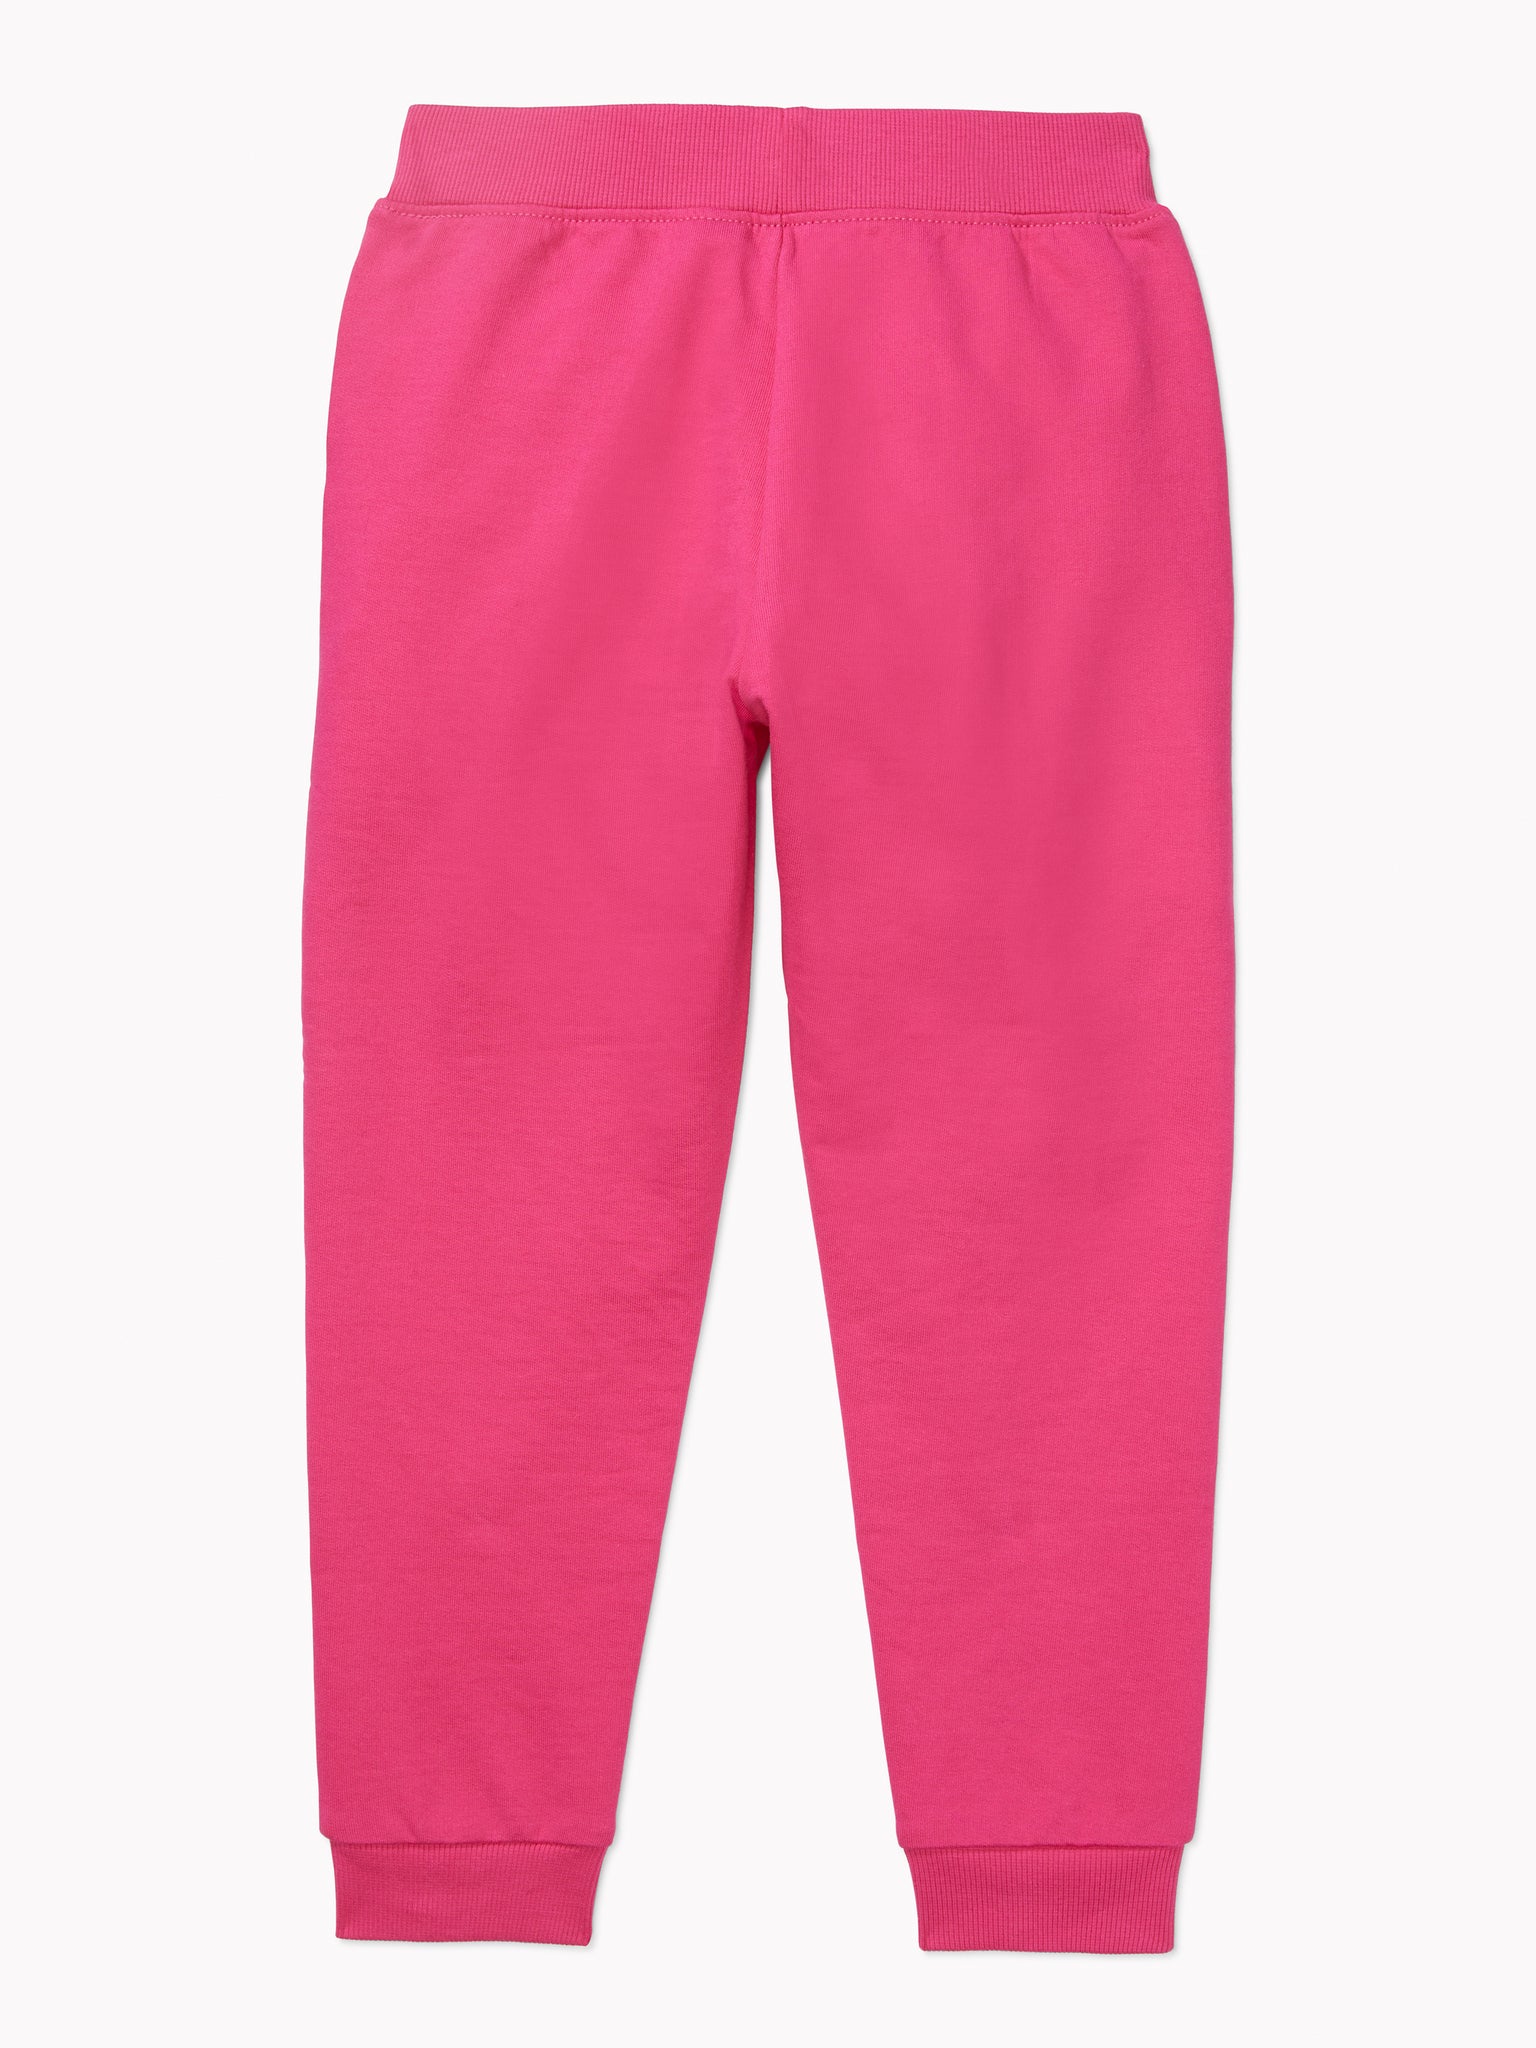 Logo Pants (Girls) - Pink